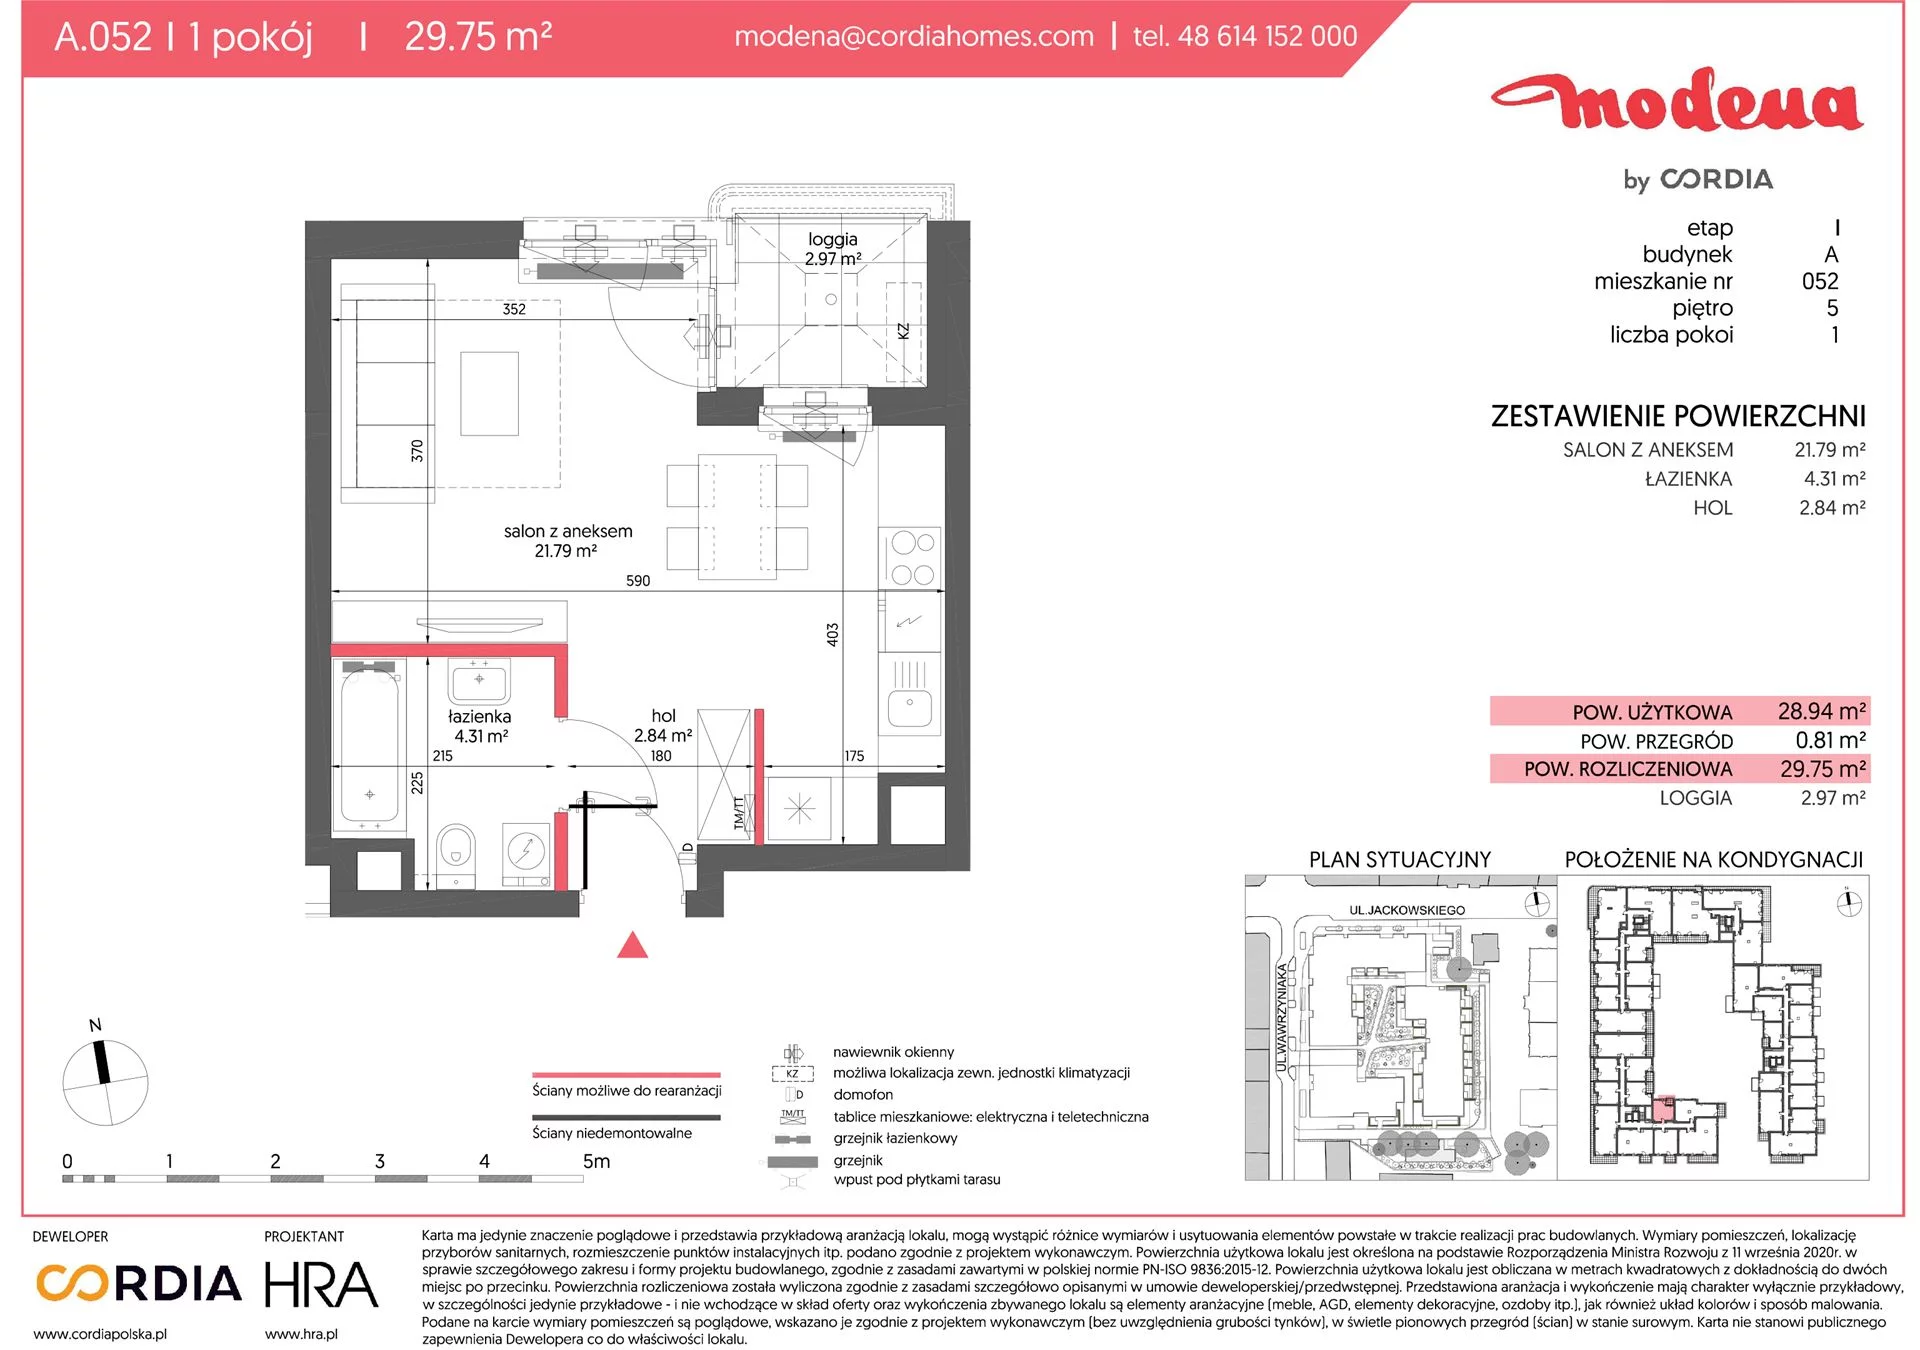 Mieszkanie 29,75 m², piętro 5, oferta nr A.052, Modena, Poznań, Jeżyce, Jeżyce, ul. Jackowskiego 24